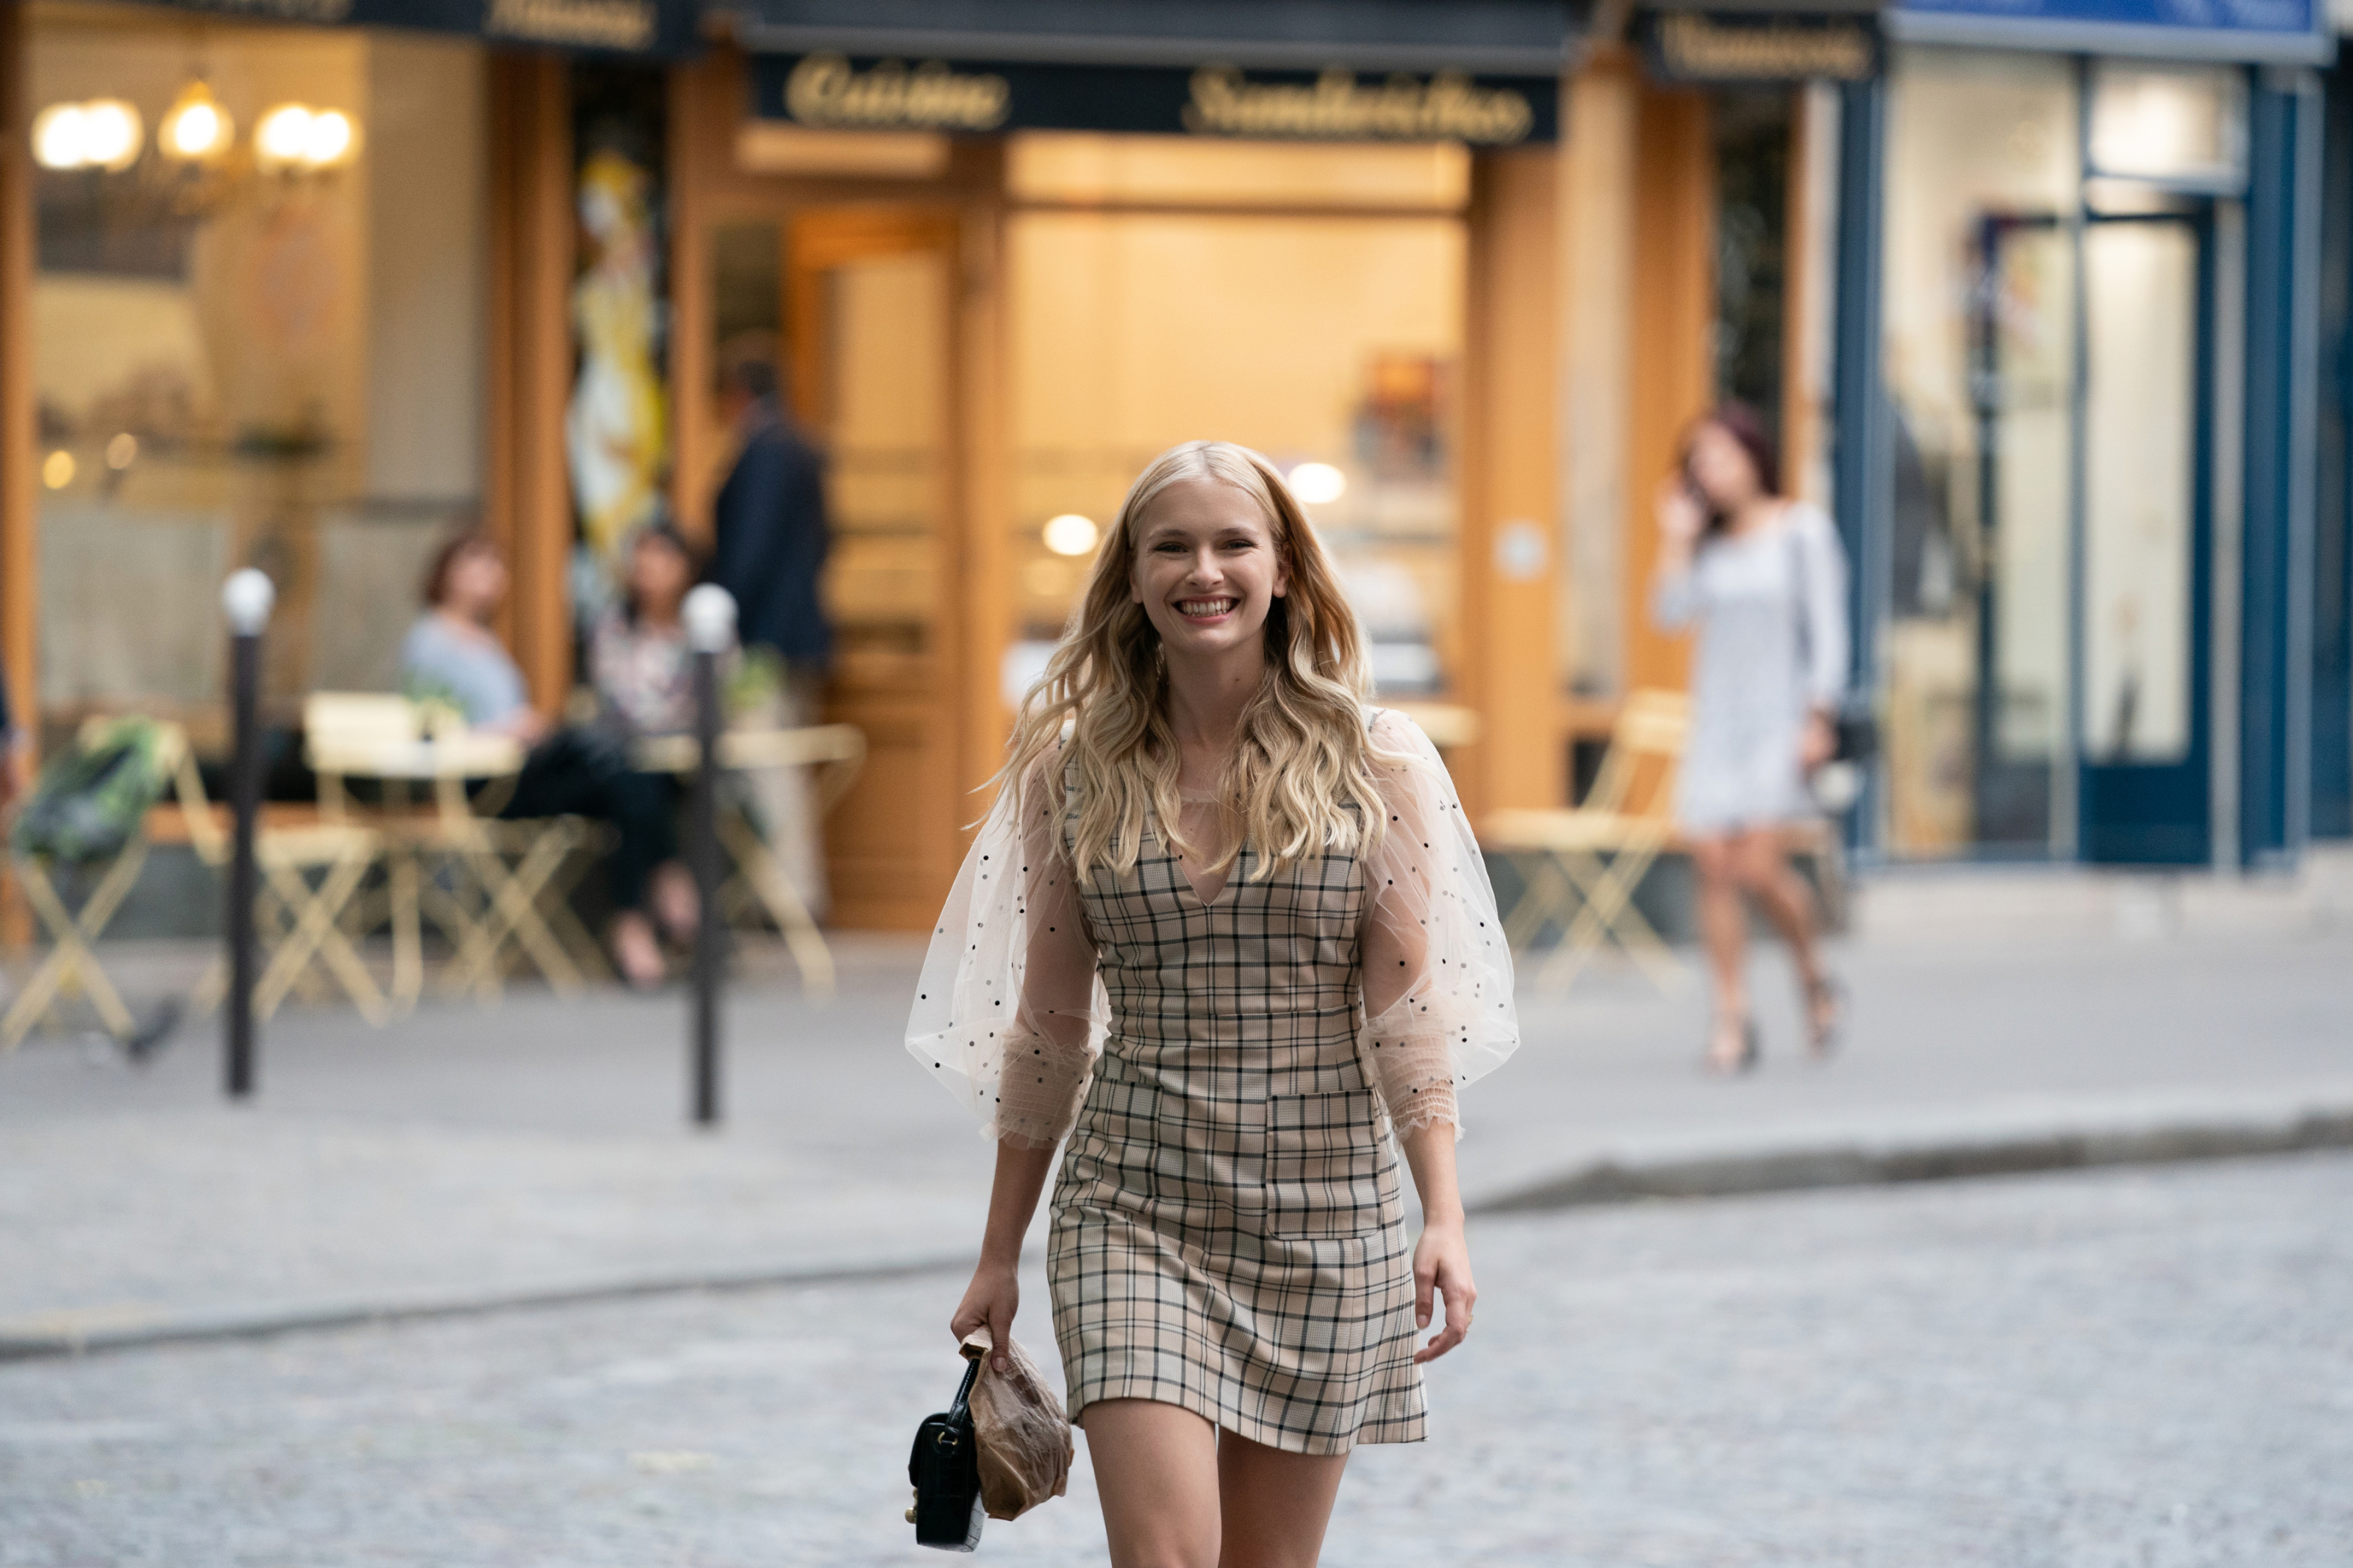 Emily in Paris Episode 5 recap: Emily's social media status opens